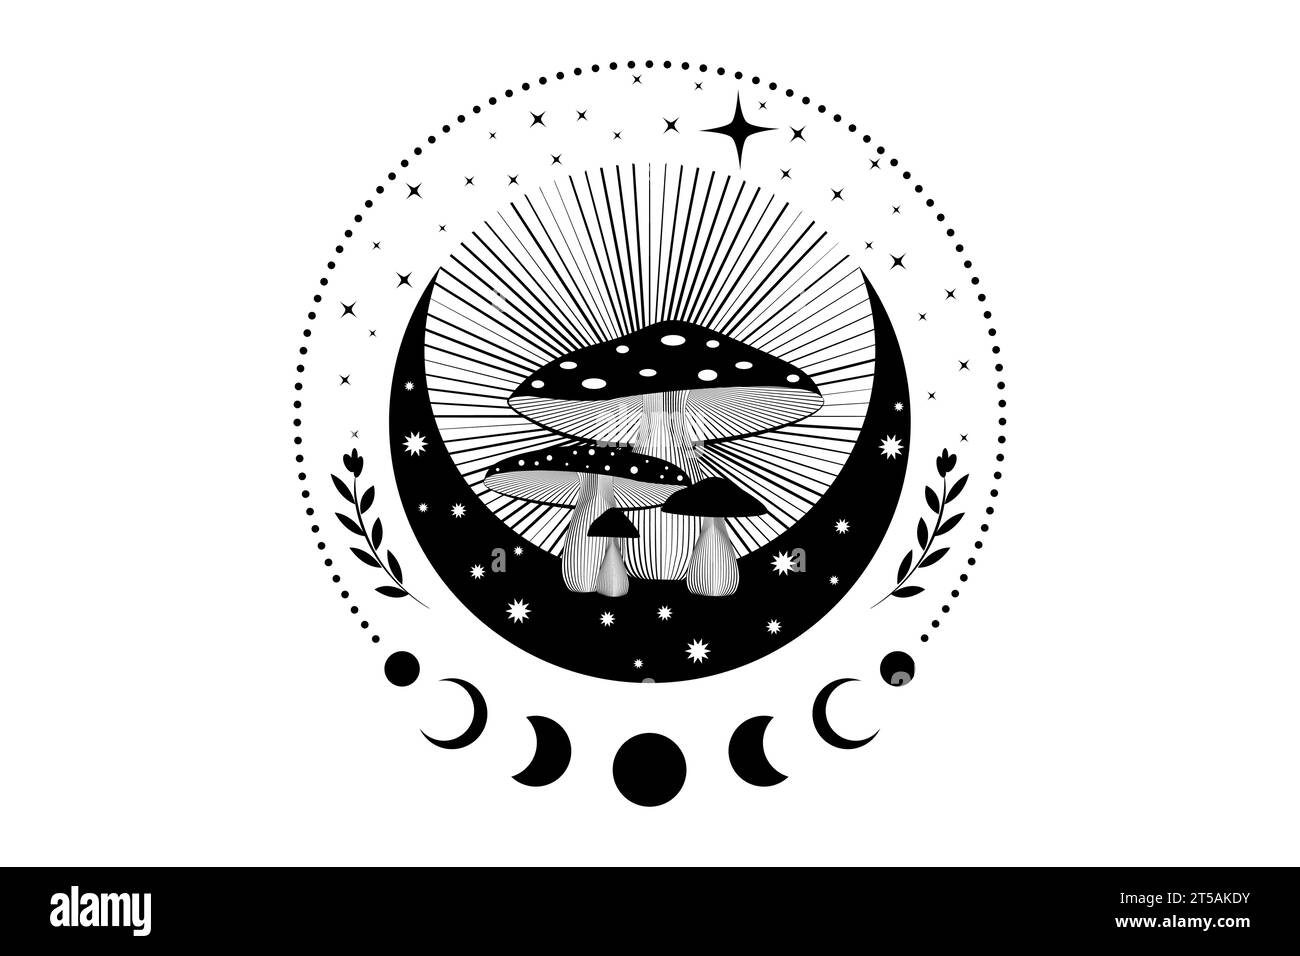 Champignons magiques chamaniques, mystique Amanita muscaria avec phases de lune et étoiles. Symbole de croissant de lune de sorcellerie, tatouage logo de champignon ésotérique sorcier Illustration de Vecteur